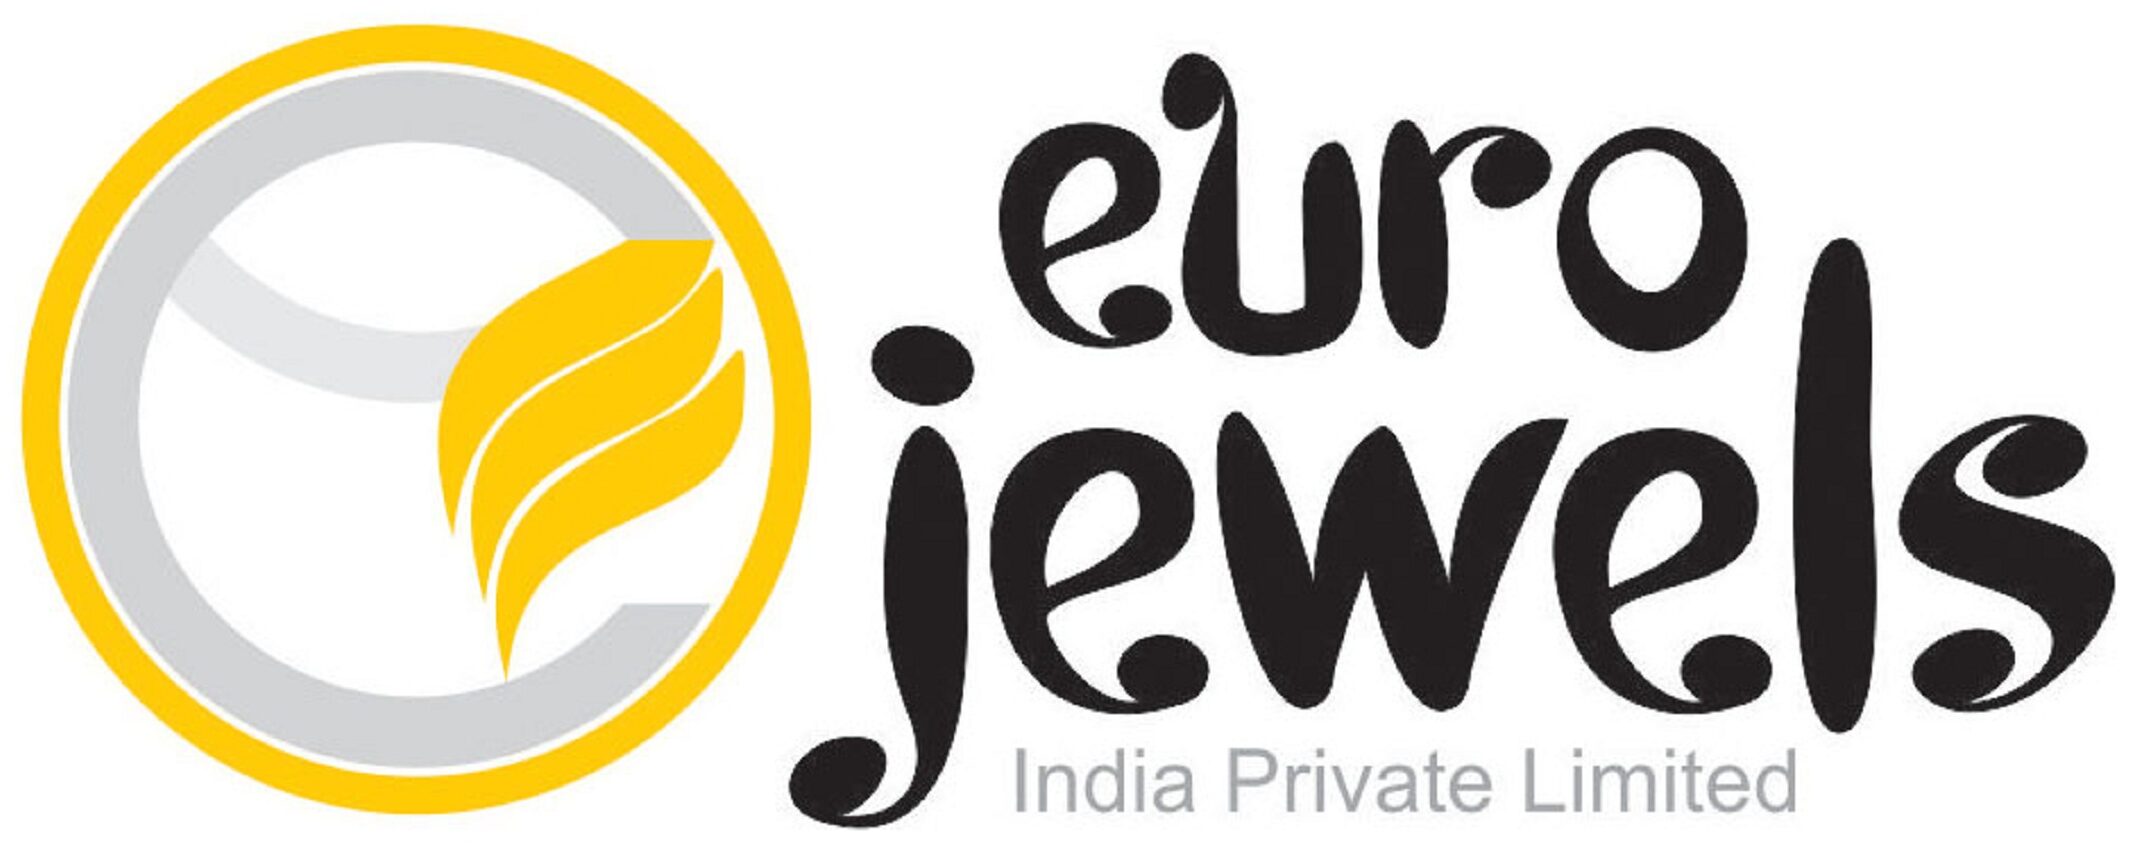 Euro Jewels India Pvt Ltd